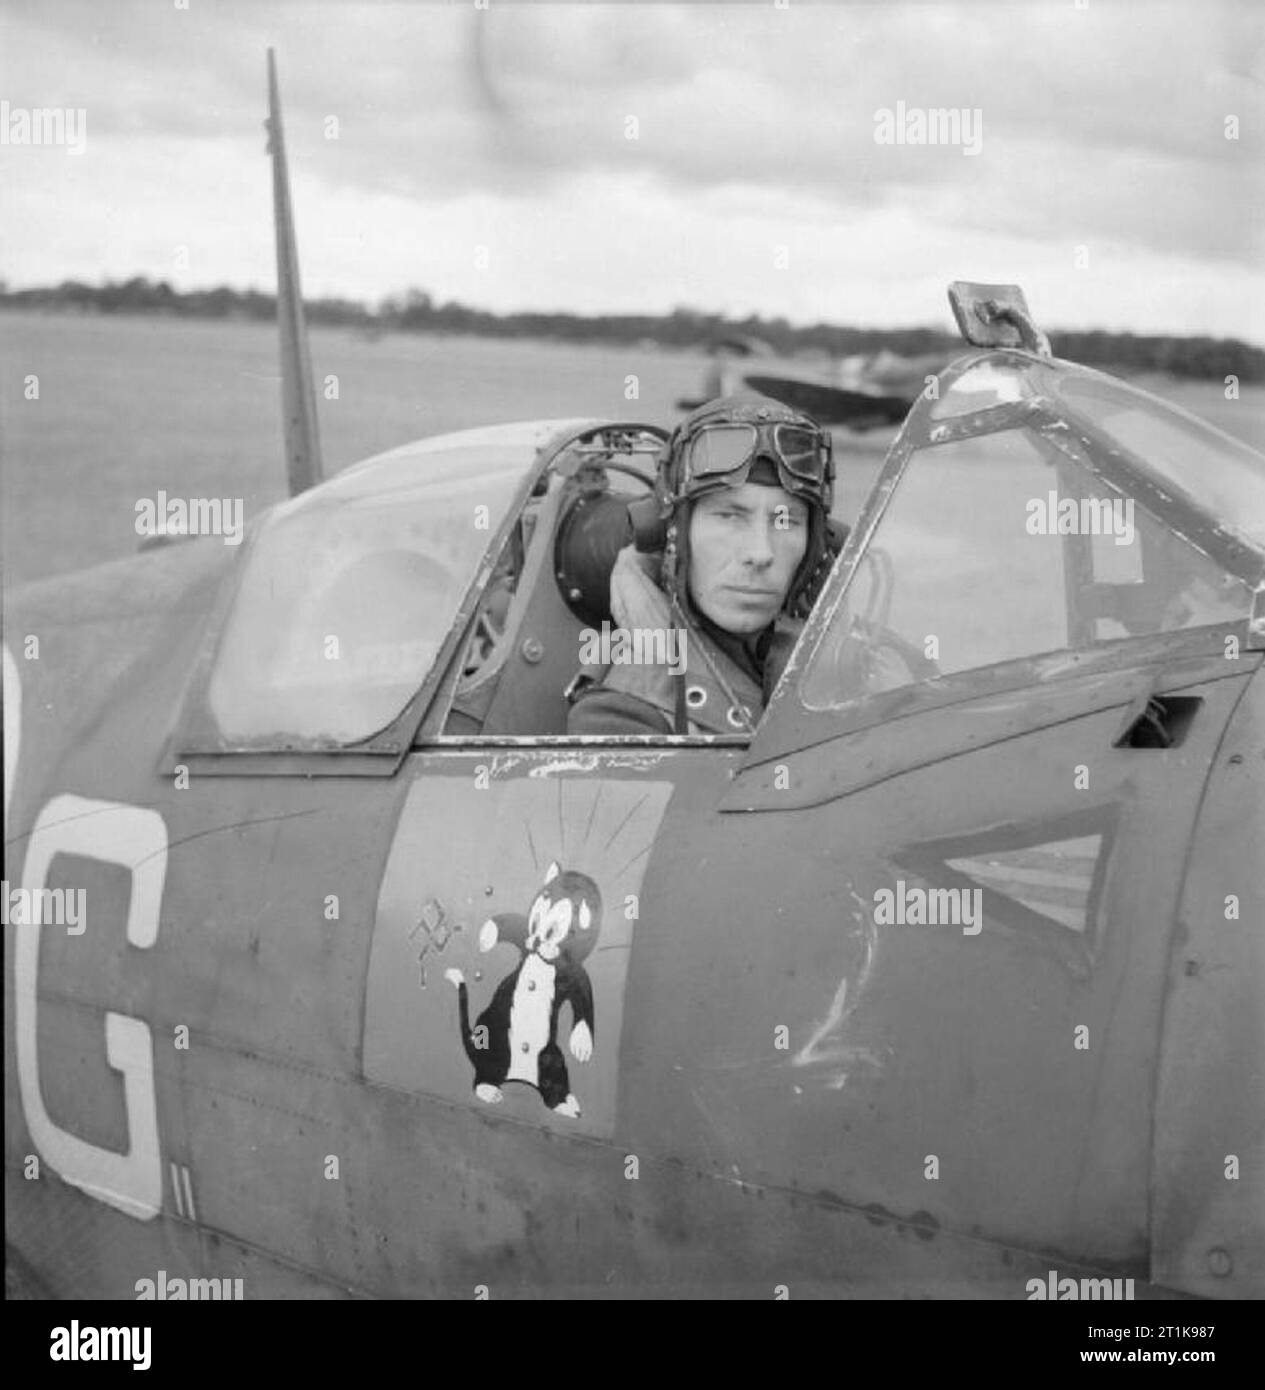 Le Fighter Command de la Royal Air Force, 1939-1945. Le commandant de l'escadre, J R 'Large' Gleed assis dans le cockpit de son Spitfire Supermarine Mark VB, AA742 'R-G', à Ibsley, Hampshire, lorsqu'il mena l'Ibsley aile. Remarque Gleed, représentant l'emblème du 'Figaro' le chat swatting une swastika, sous le cockpit. Banque D'Images